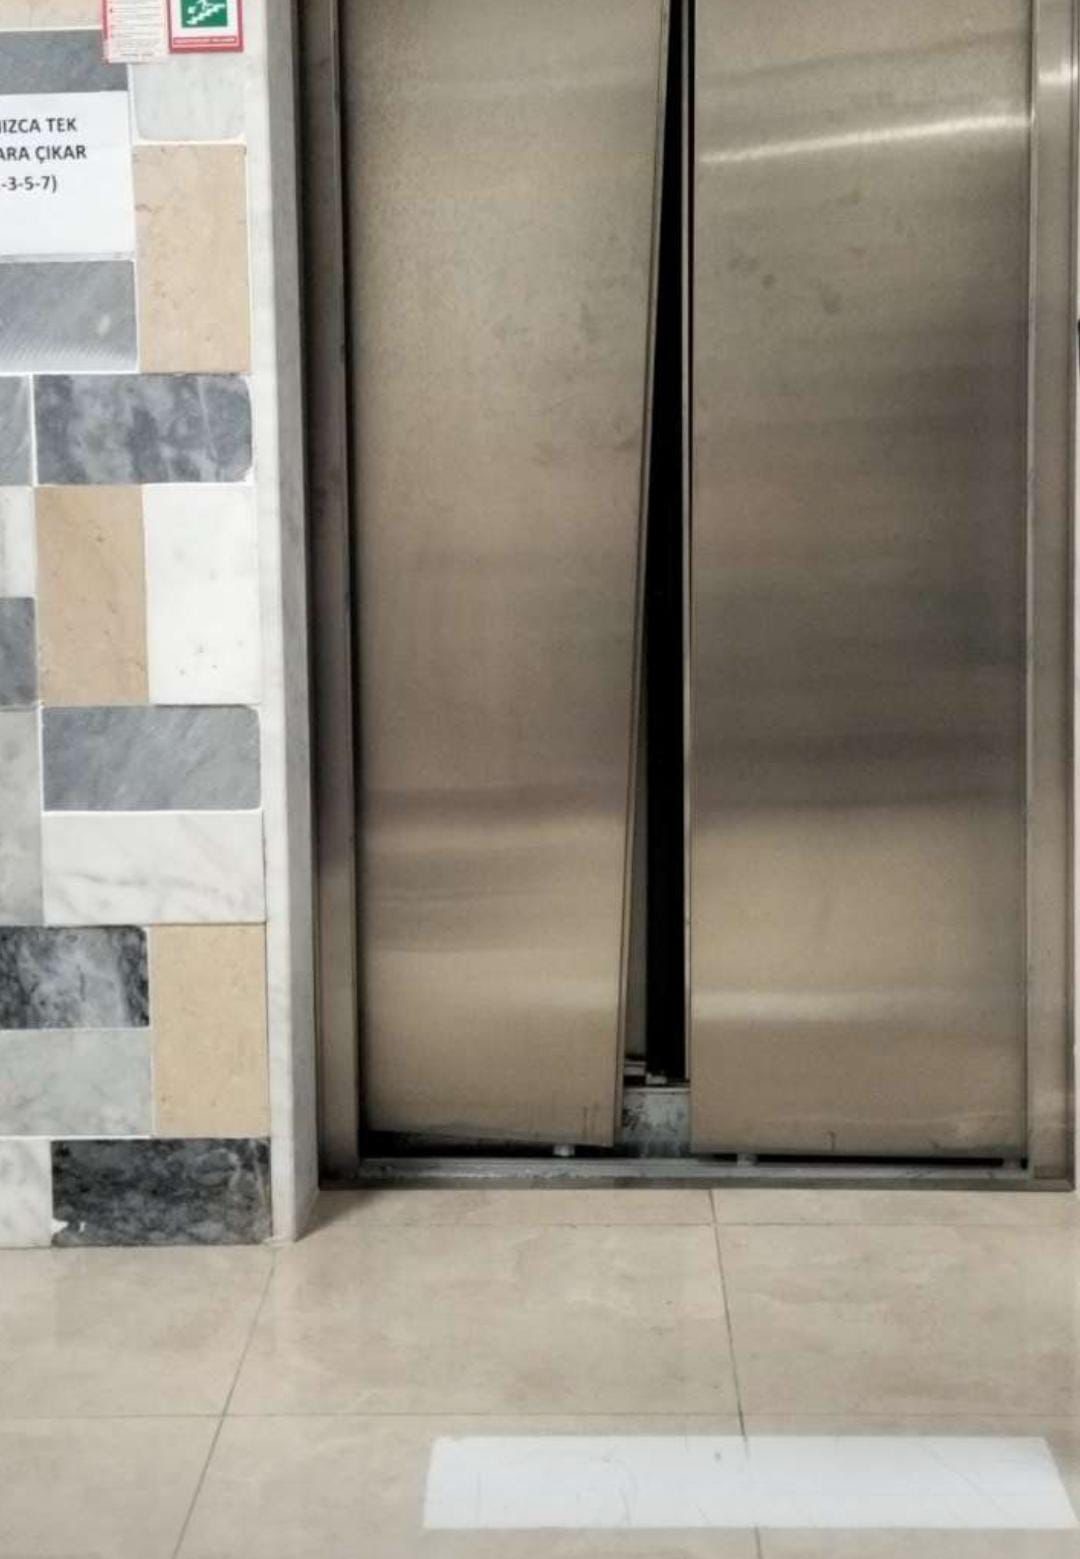 Giresun’da KYK yurdunda zemine çakılan boş asansör paniğe neden oldu